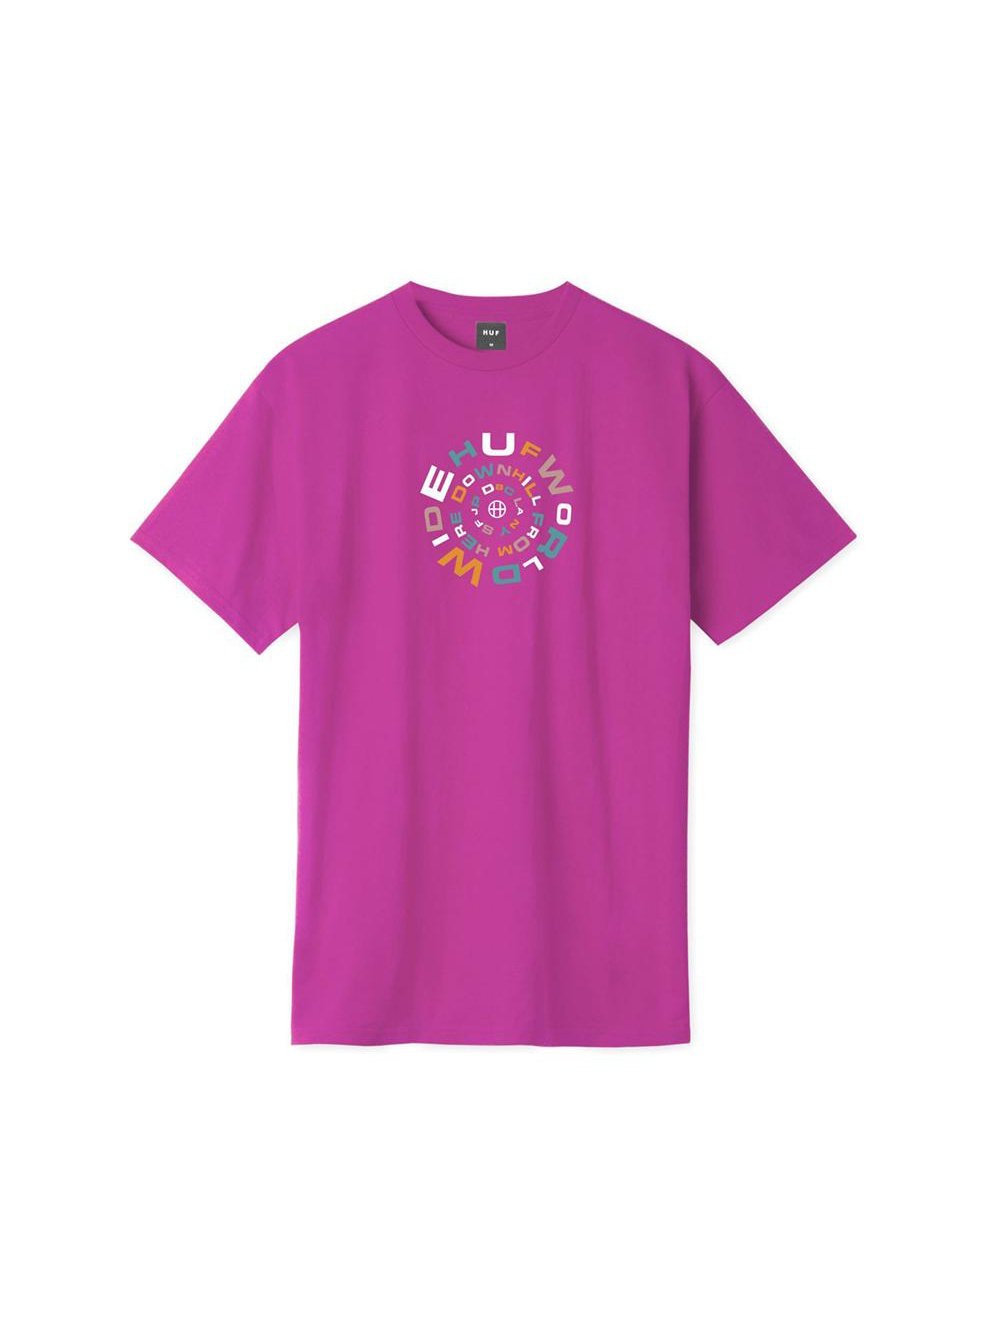 Huf Downward Spiral Short Sleeve T-Shirt Coral TS01170.